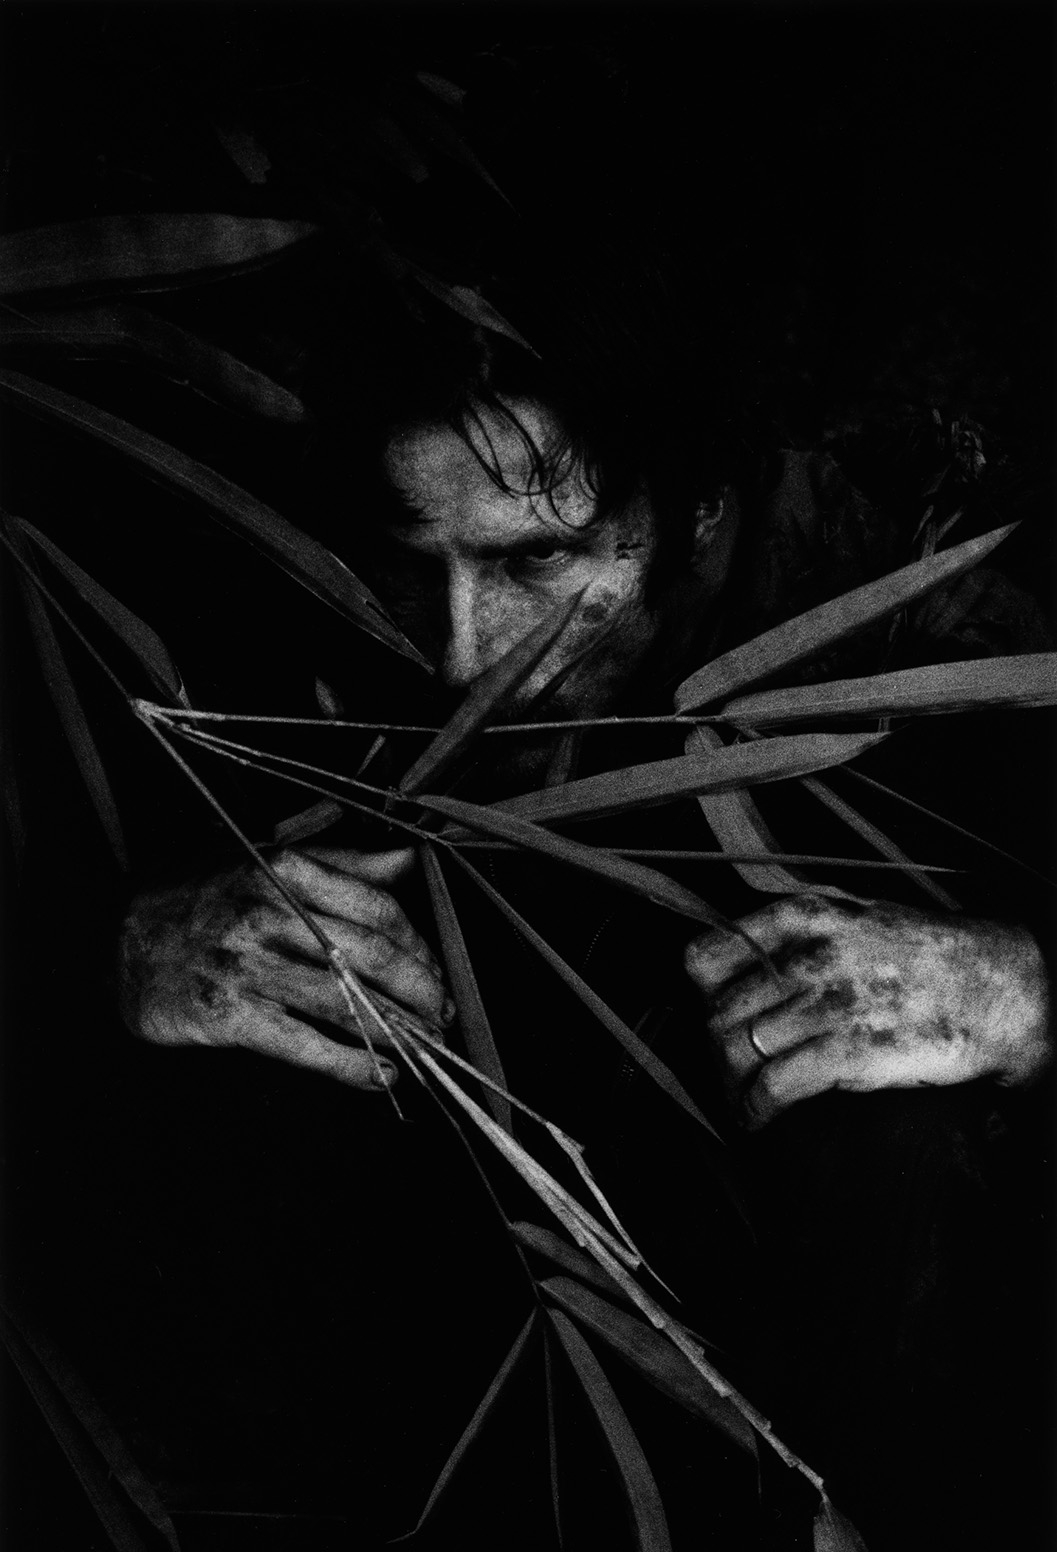 Schwarz-weiß-Foto: Ein Mann guckt grimmig durch die Blätter einer Dschungelpflanze.